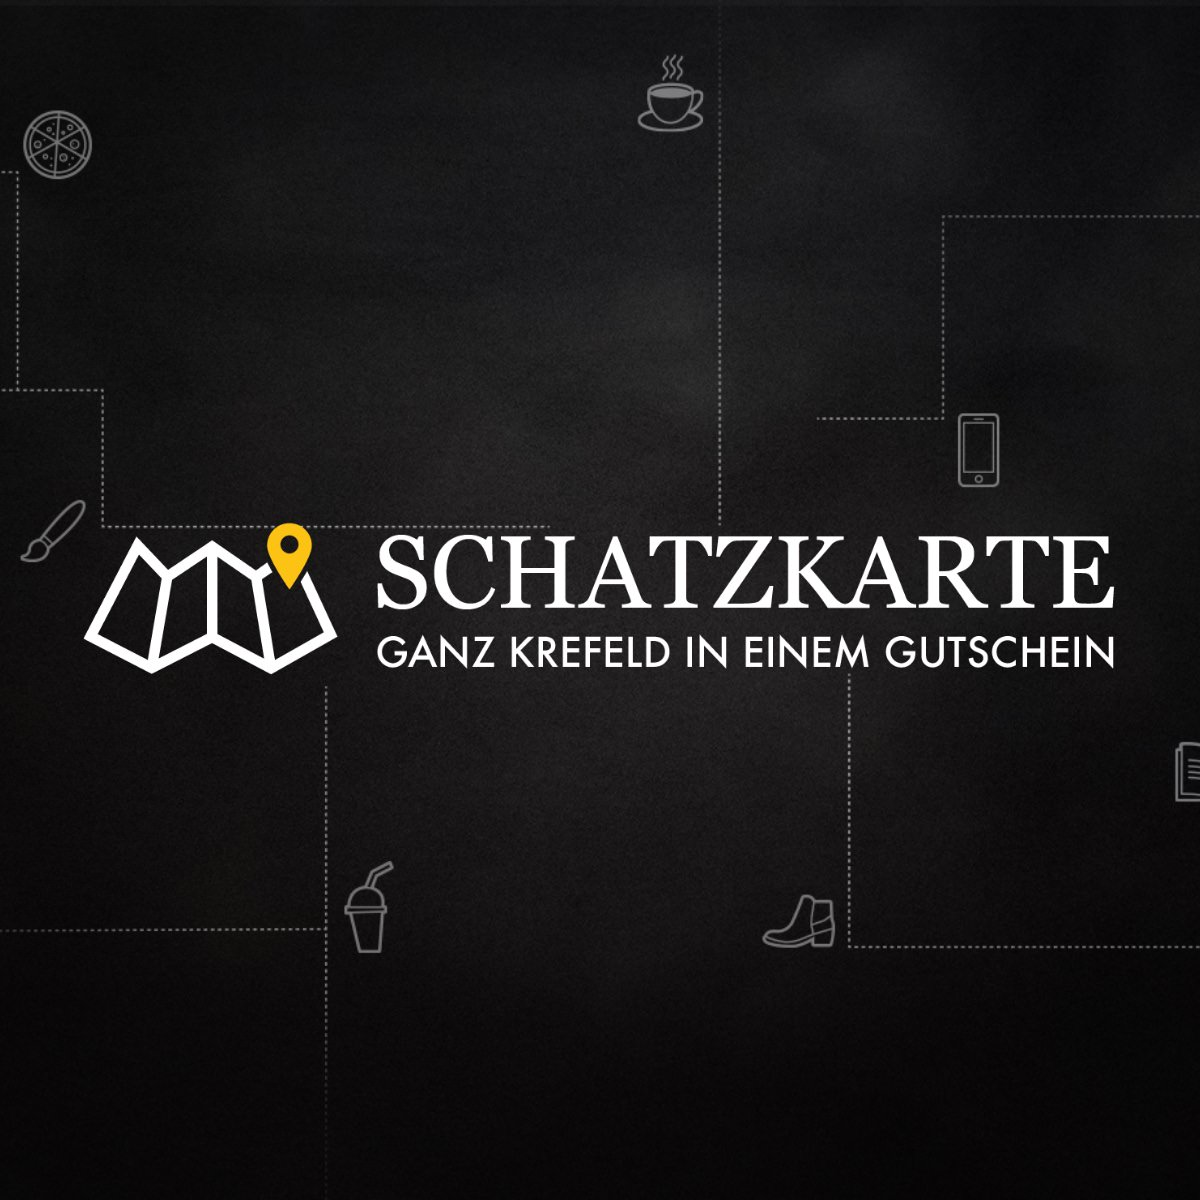 (c) Schatzkarte-krefeld.de